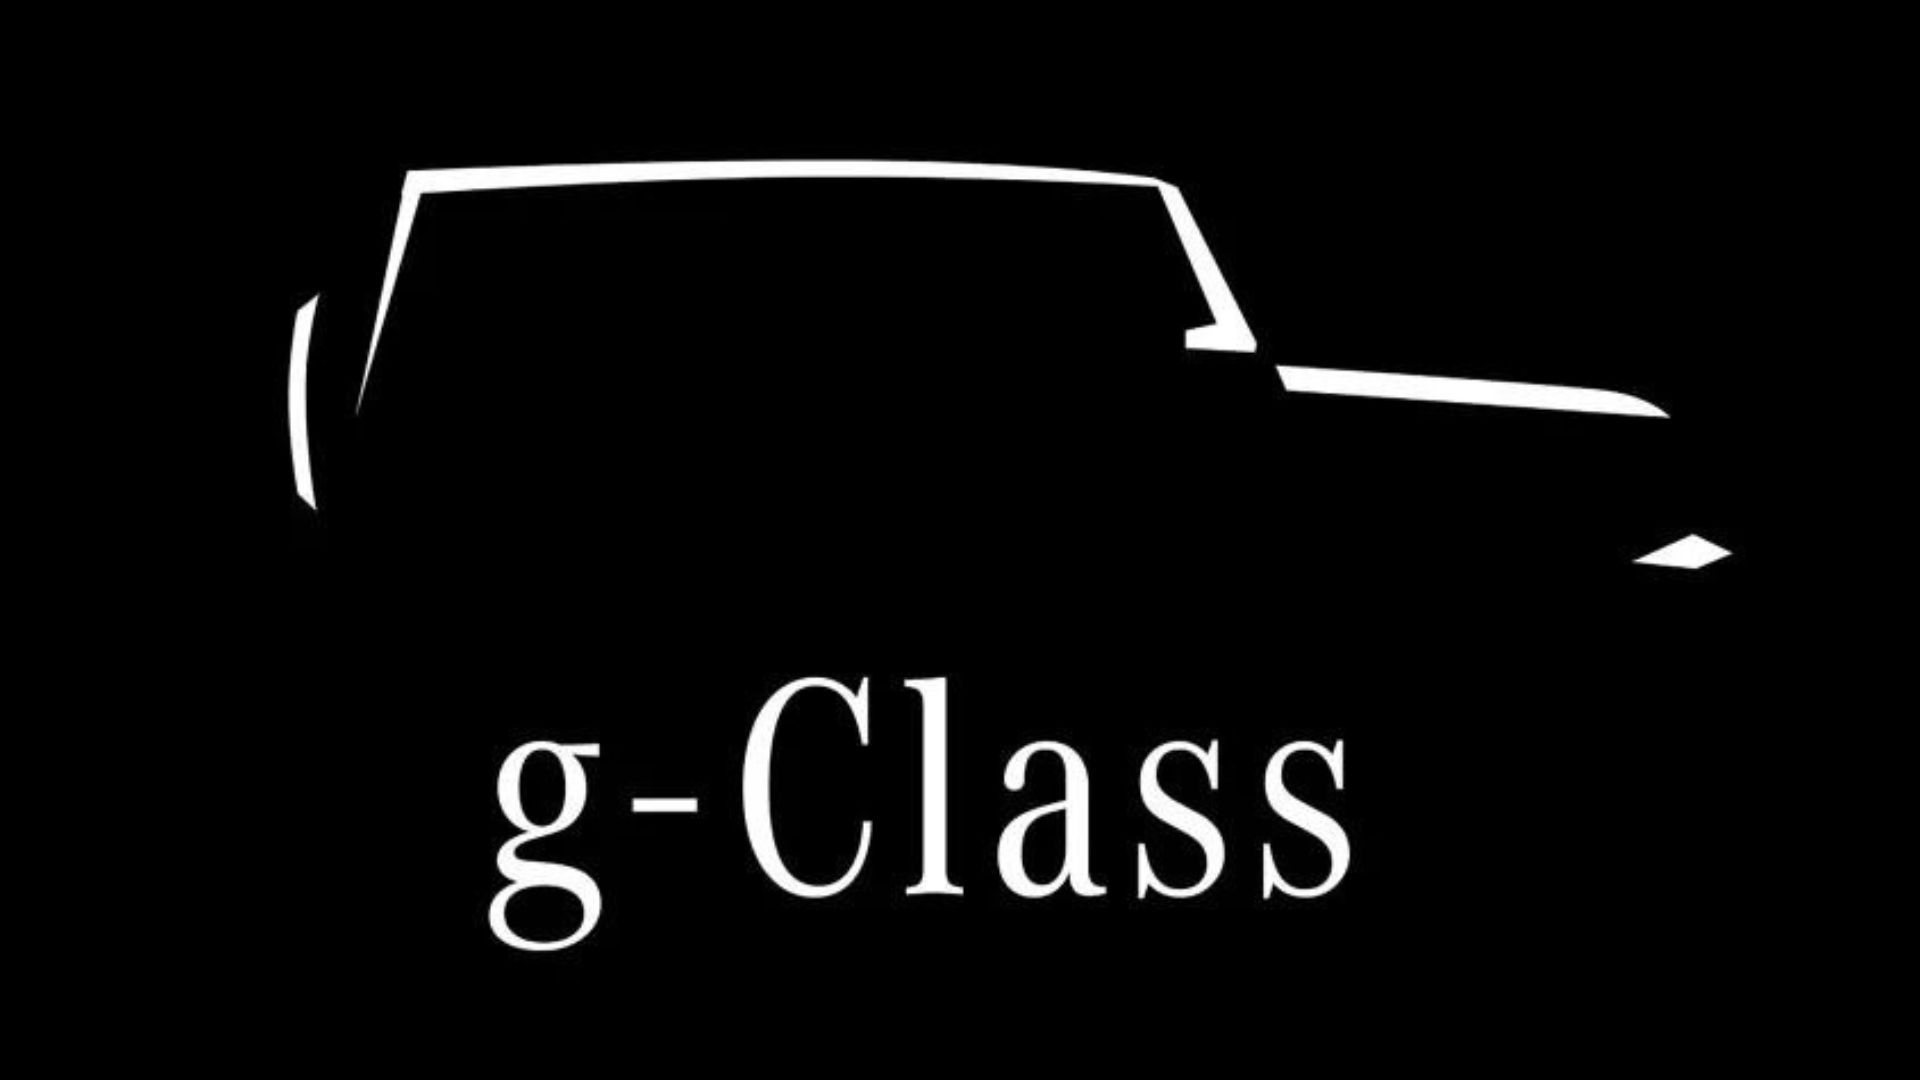 Mercedes Baby G-Class